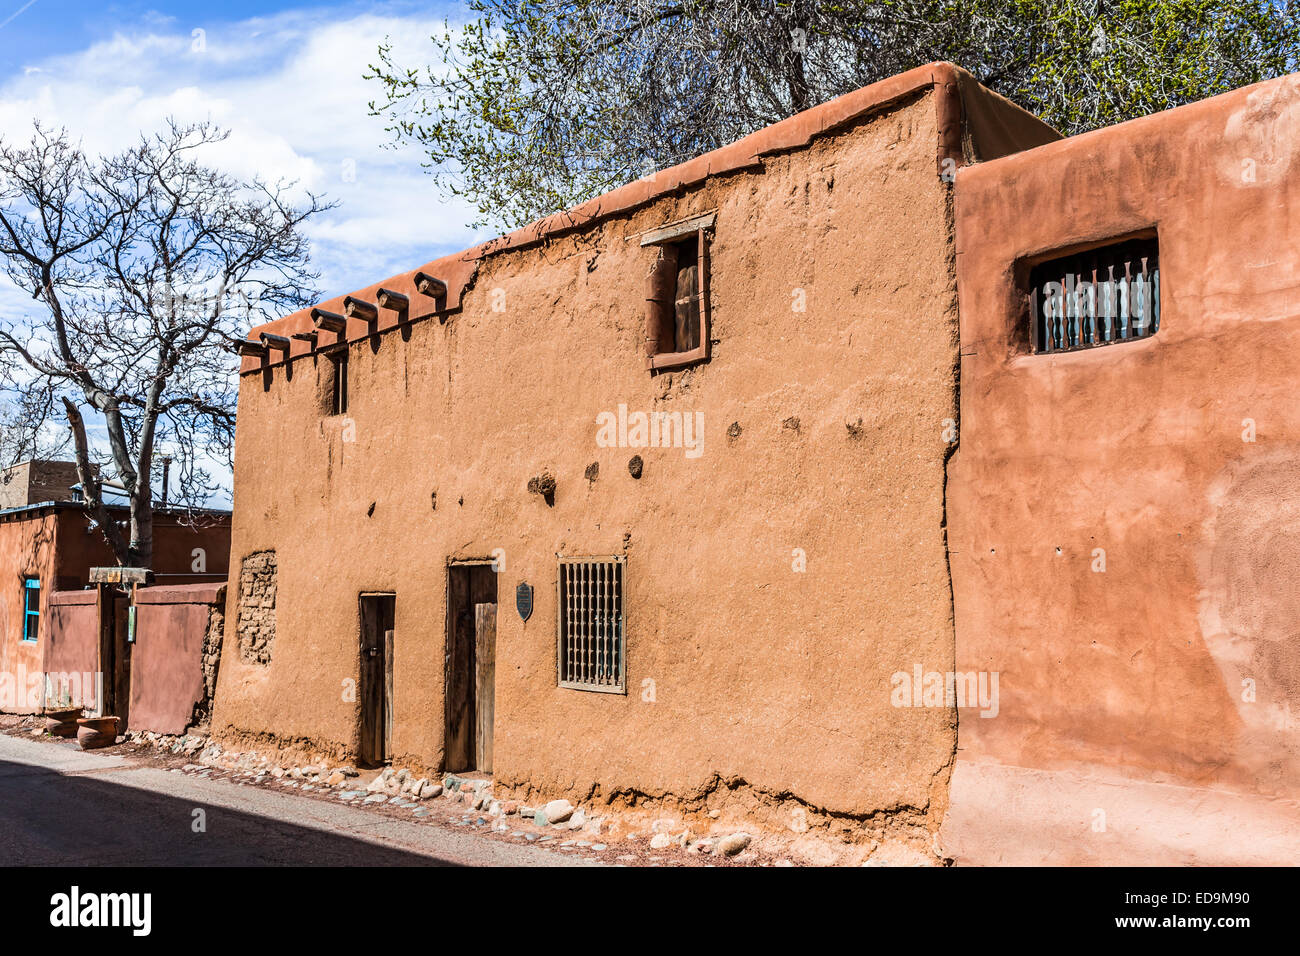 Old Adobe House, Santa FE, New Mexico Stock Photo